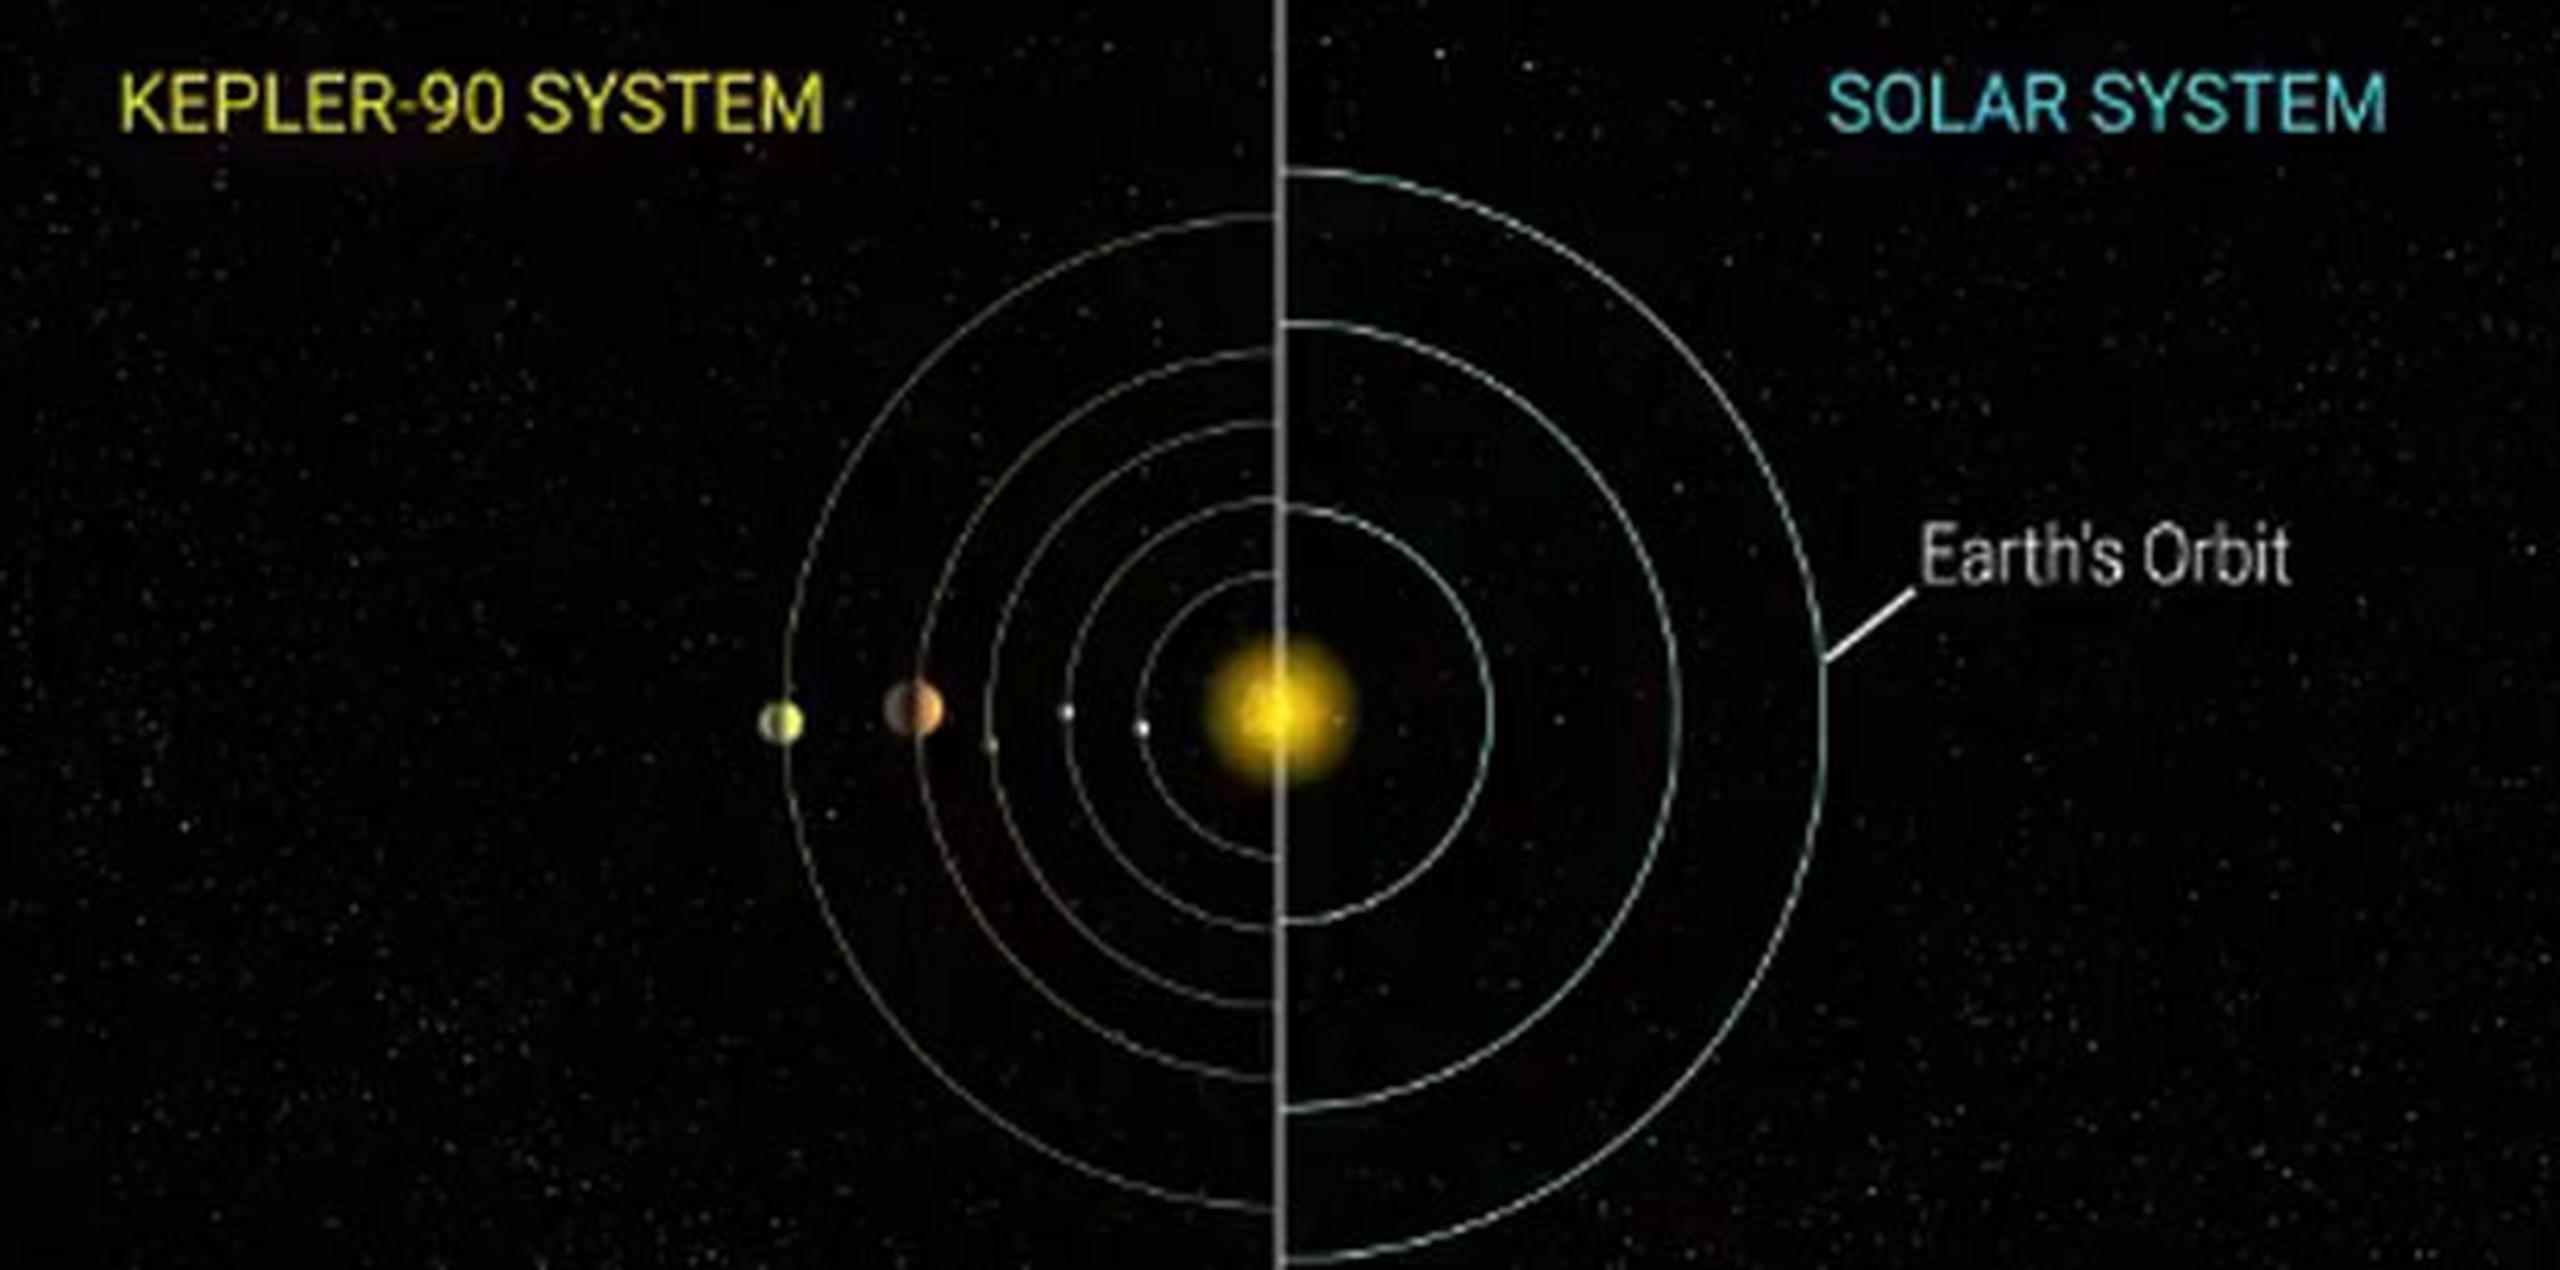 Los datos recopilados por Kepler en cuatro años suman 35,000 posibles señales planetarias, de las cuales, las más débiles a menudo se pierden, por lo que Shallue y Vanderburg pensaron que podría haber descubrimientos de exoplanetas que se estaban pasando por alto. (NASA)